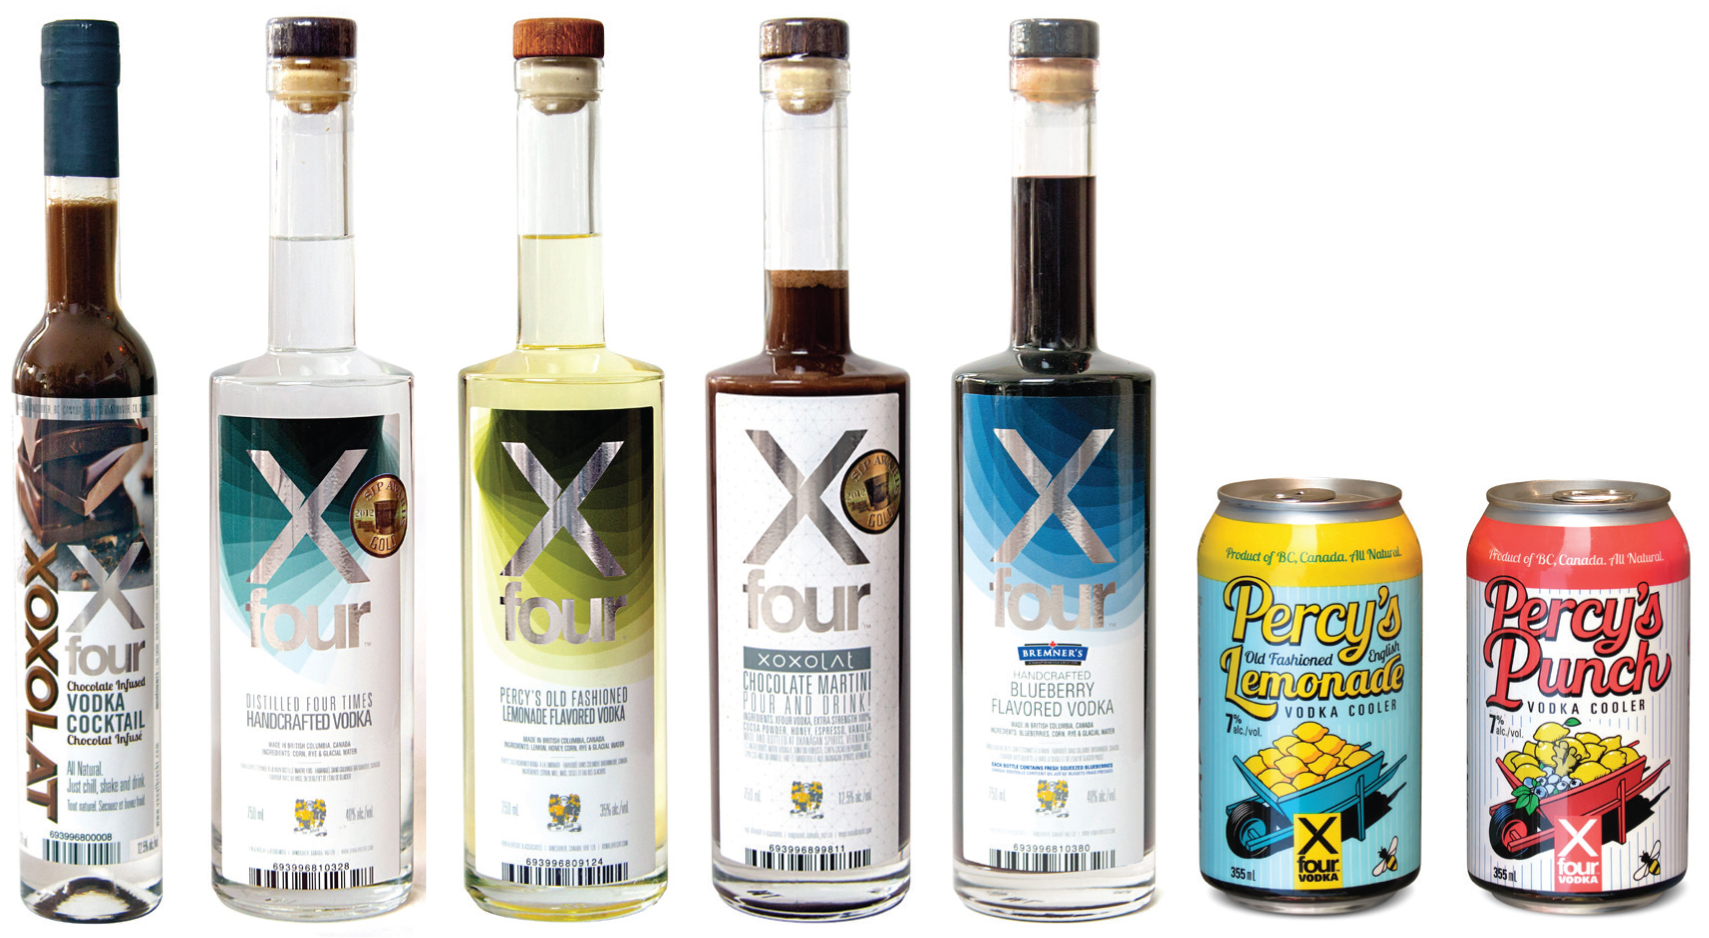 XFour Vodka Company images